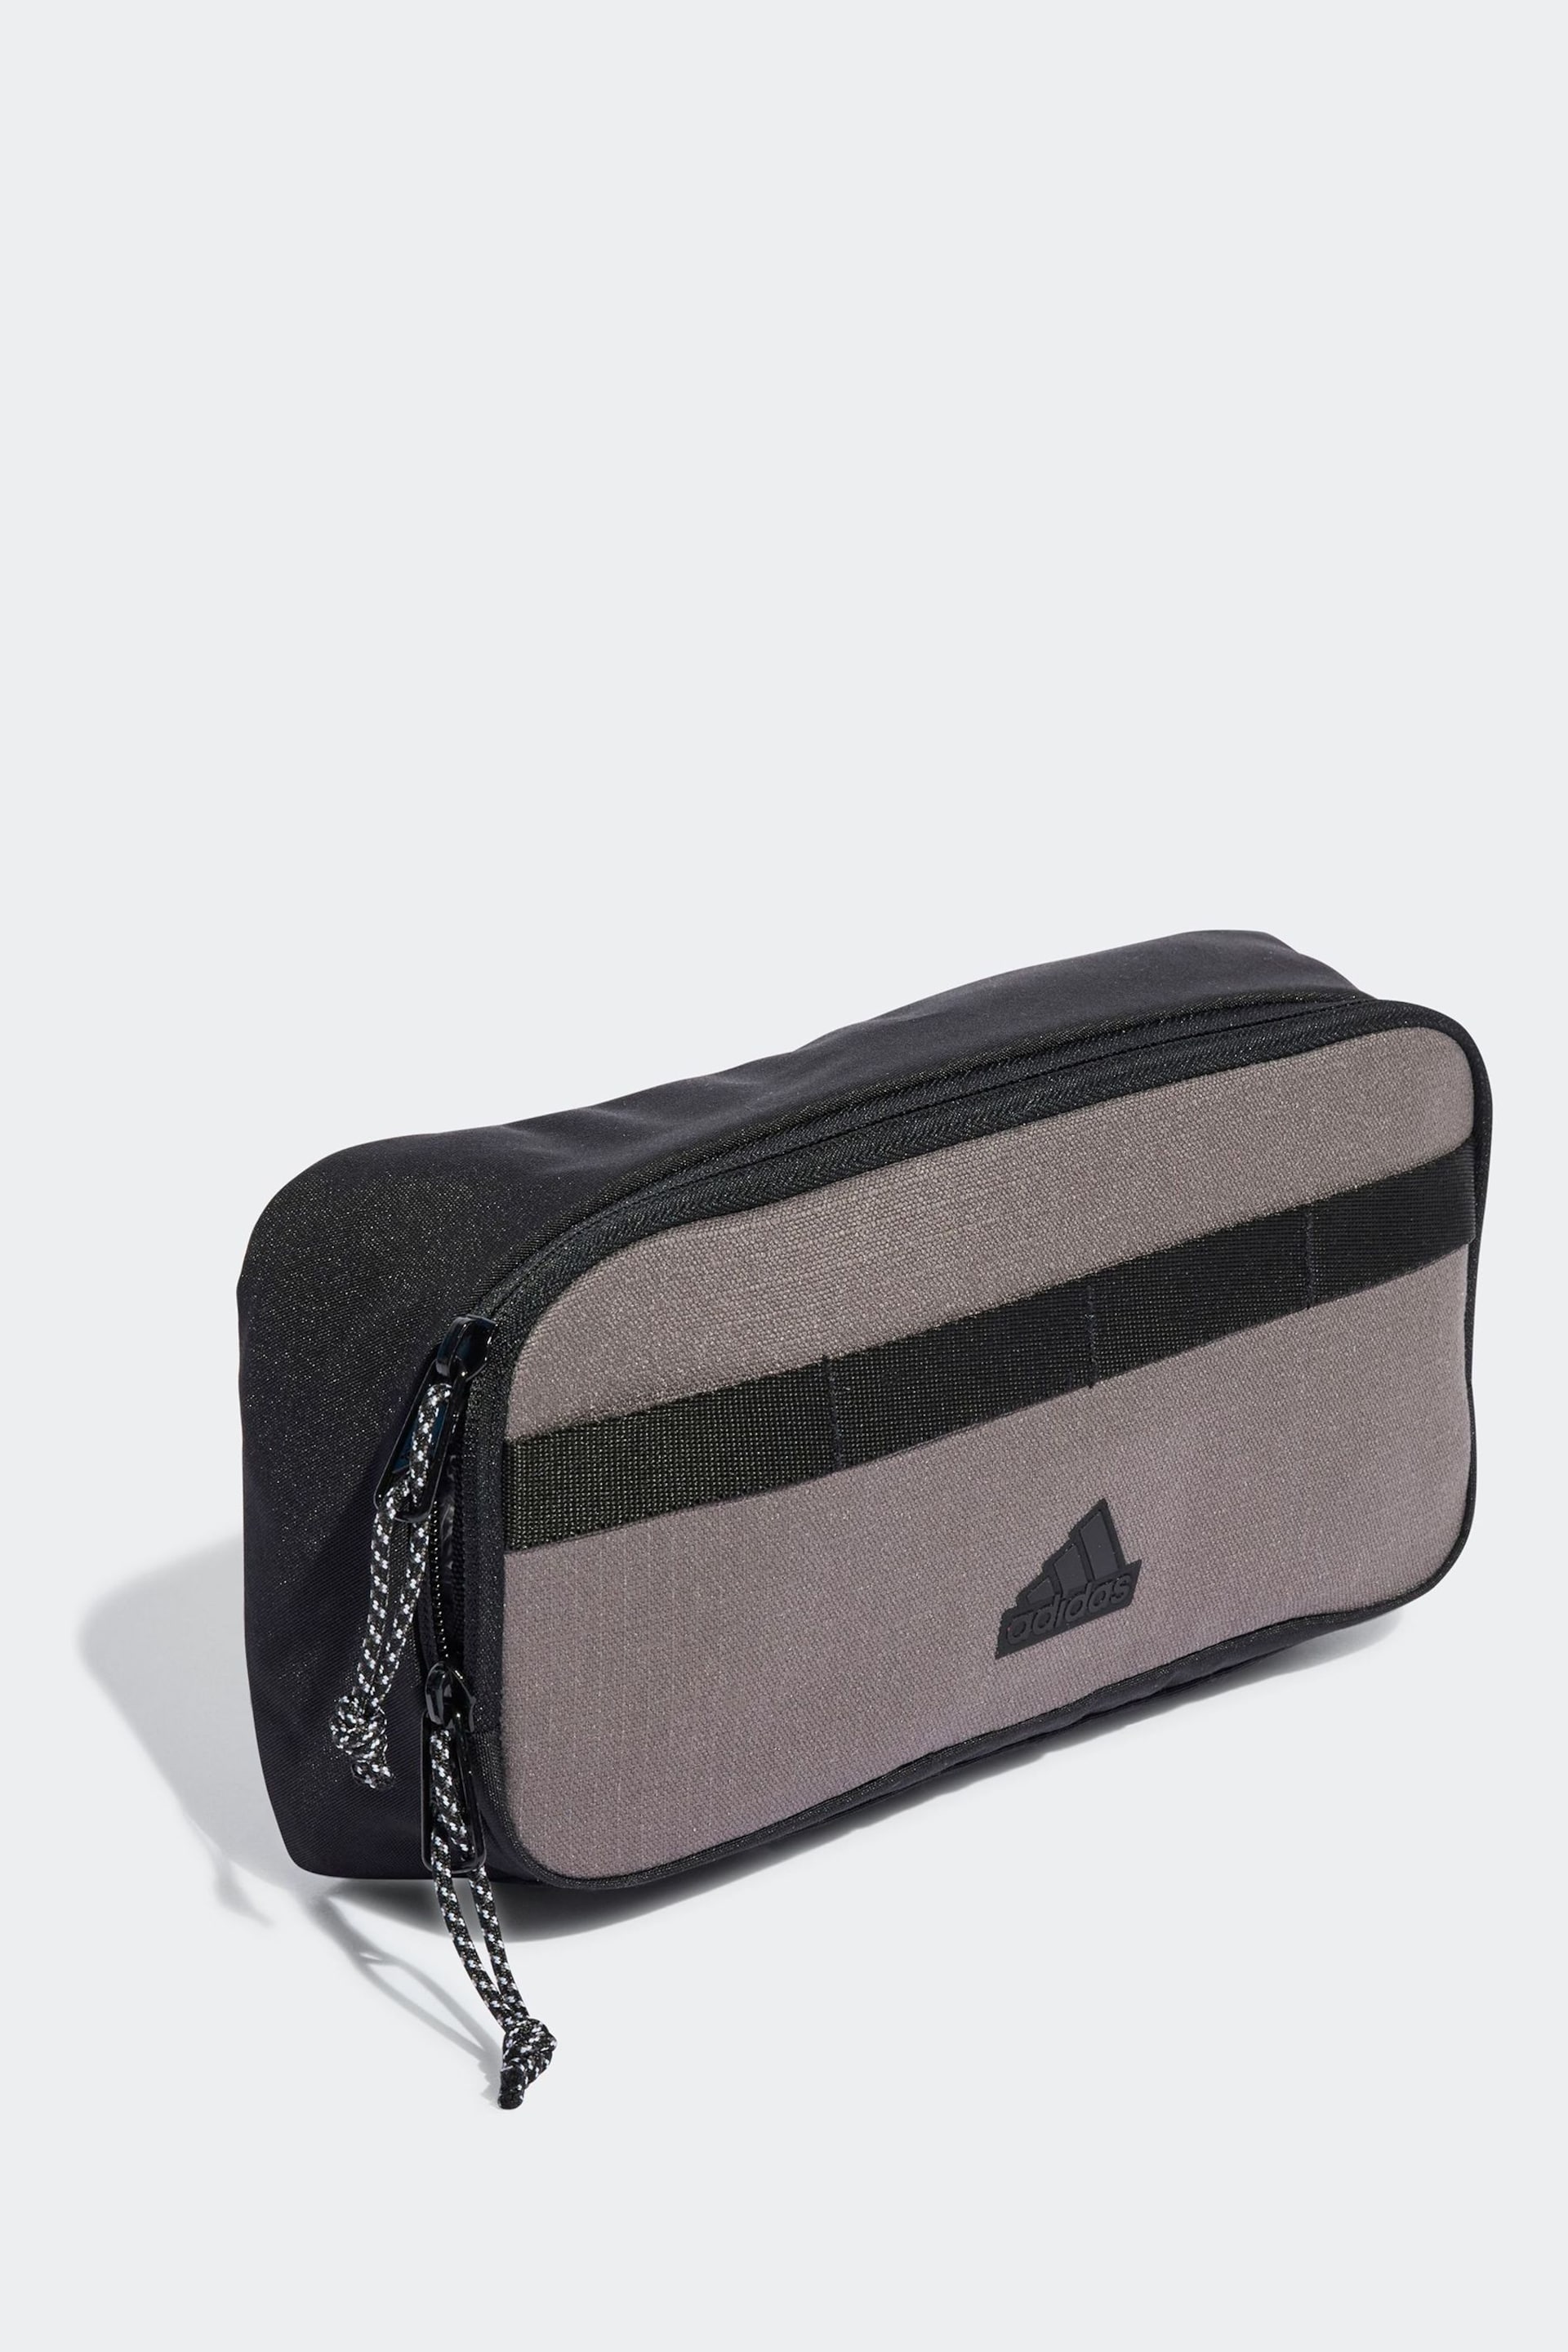 adidas Brown Light Xplorer Small Bag - Image 3 of 6